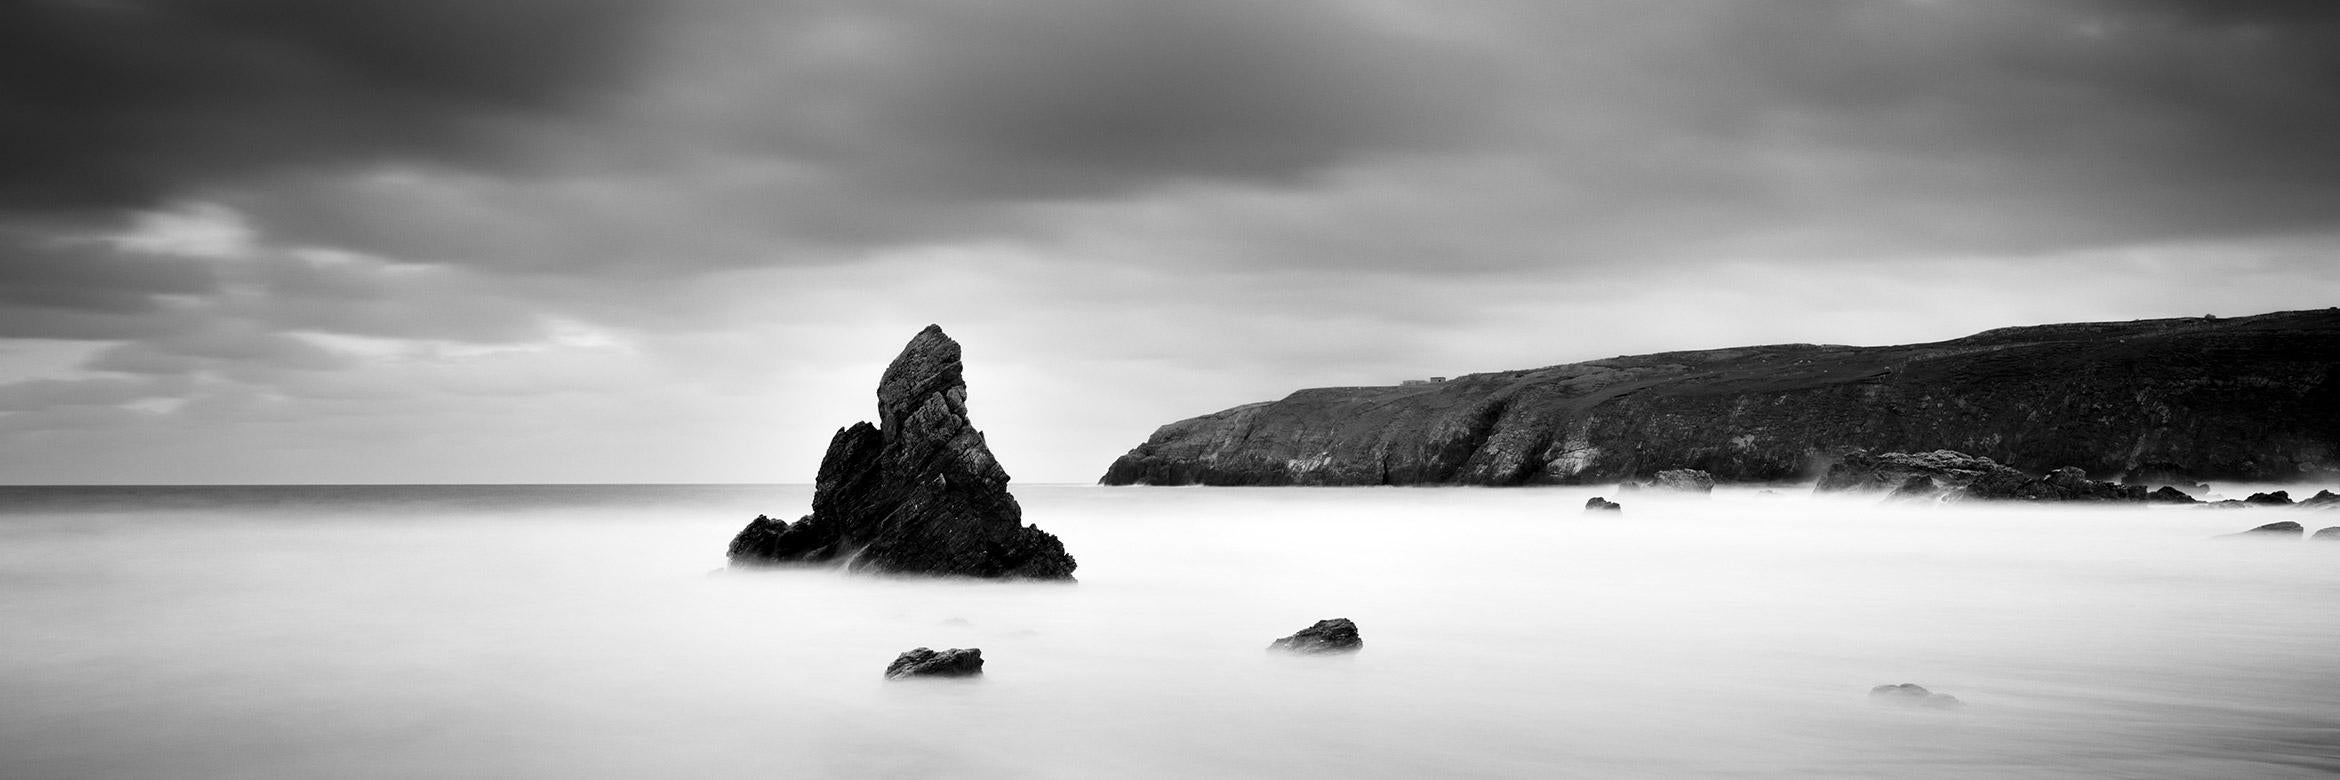 Sea Stack Panorama, Küstenlinie, Schottland, Schwarz-Weiß-Landschaftsfotografie